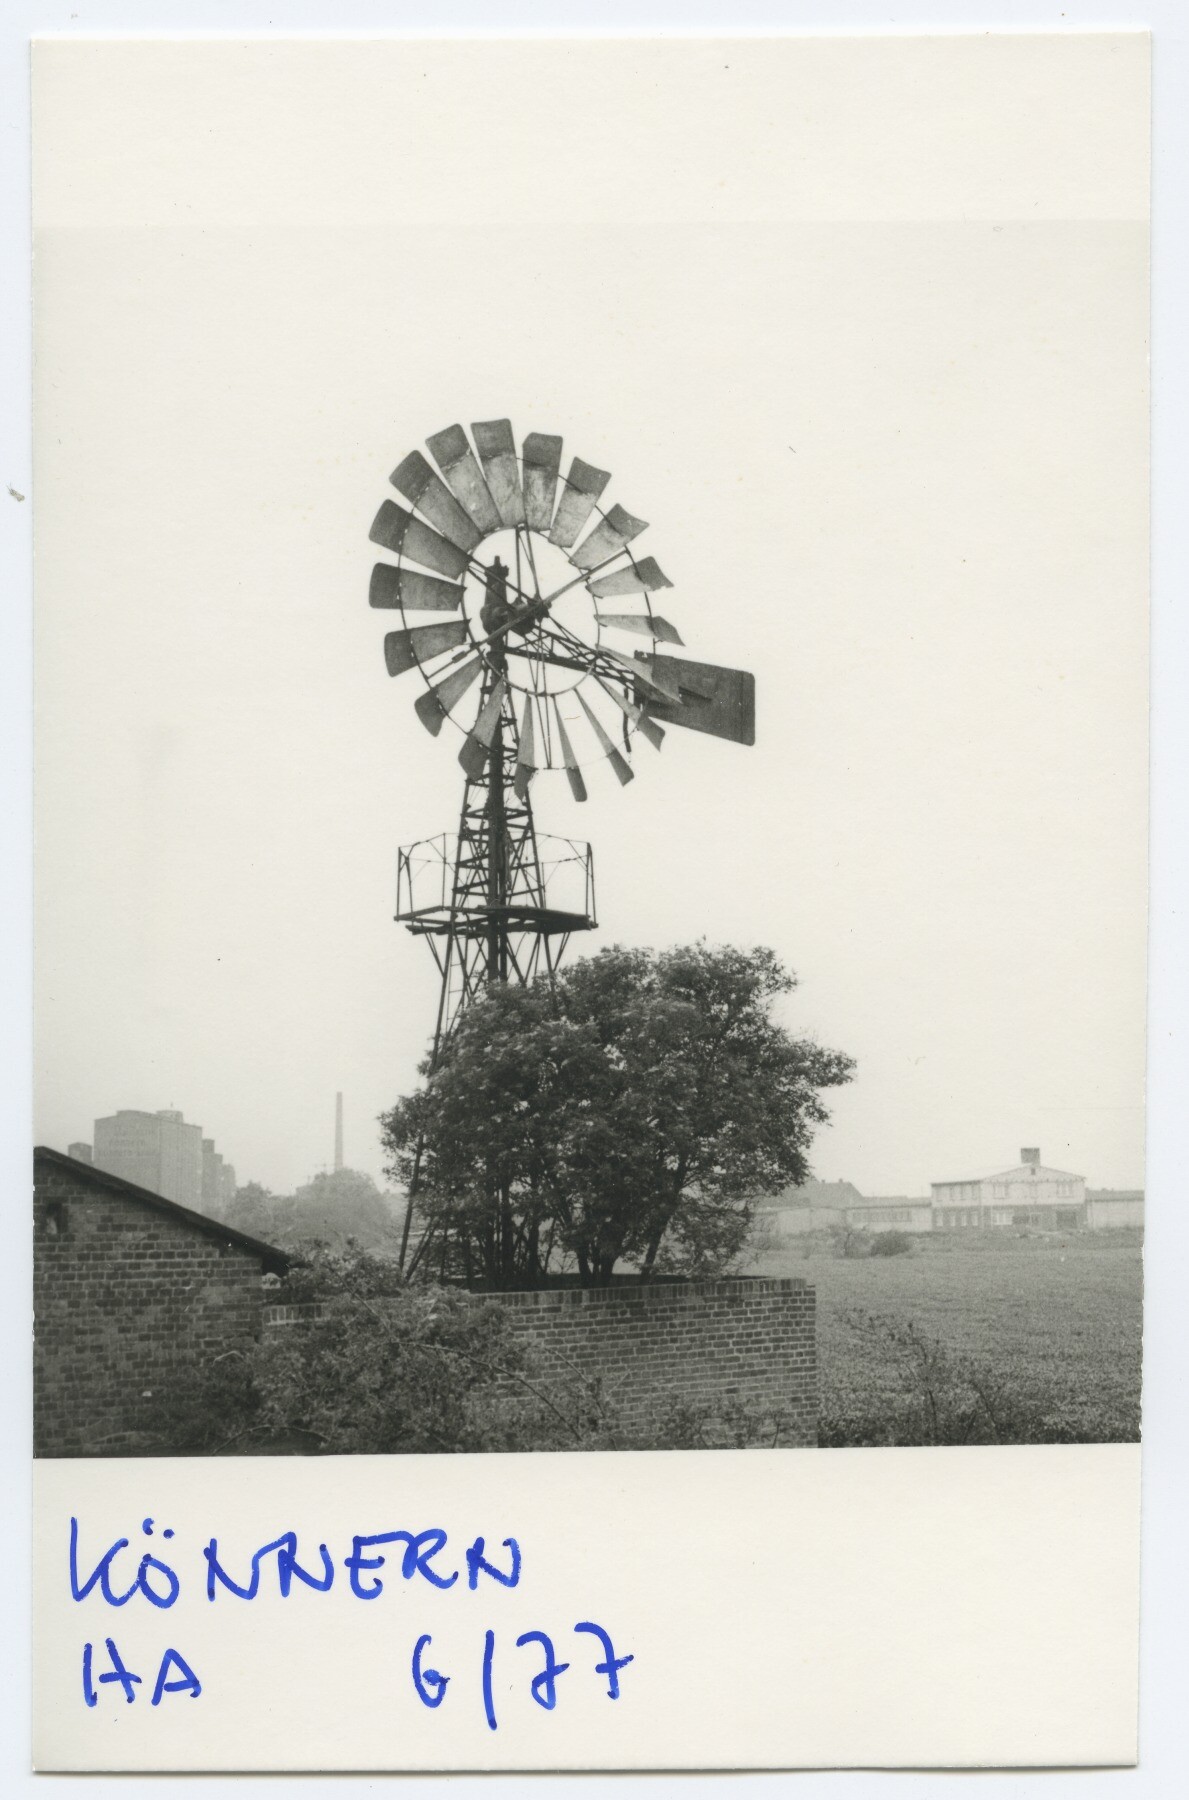 Windrad in Könnern (Historische Mühle von Sanssouci CC BY-NC-ND)